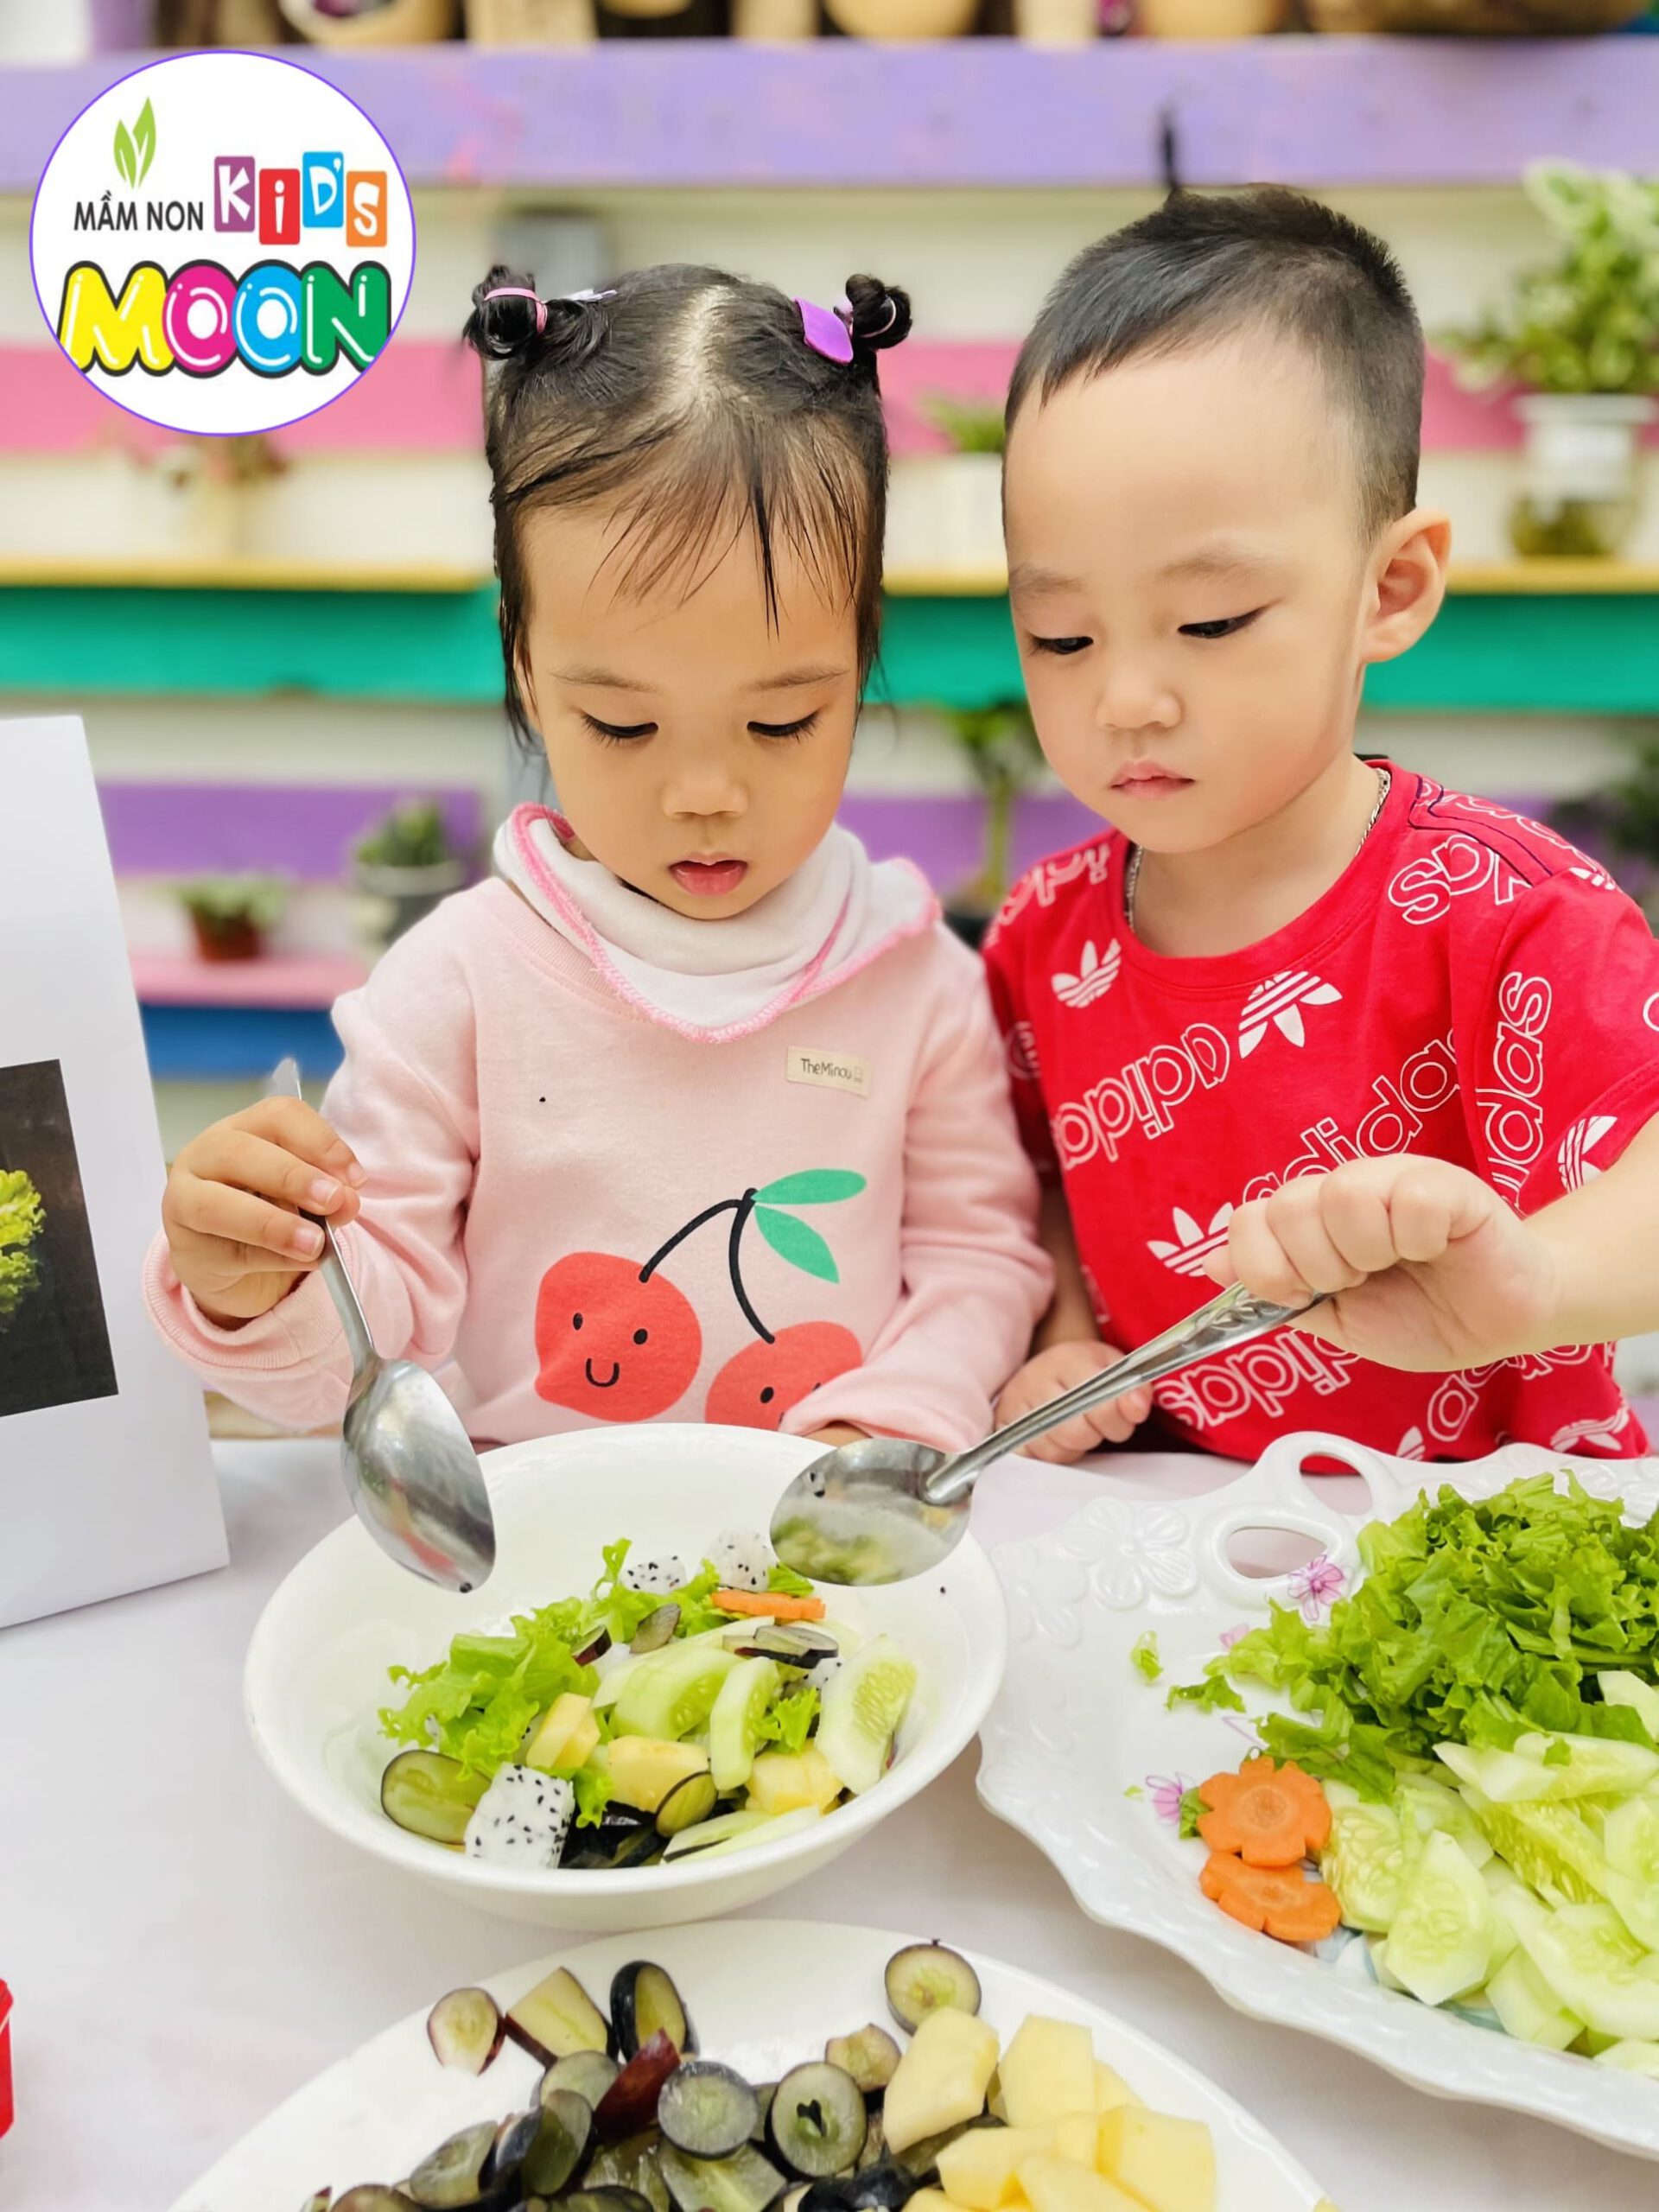 Hoạt Động Trải Nghiệm: Bé Làm Món Salad Hoa Quả - Mầm Non Kid's Moon